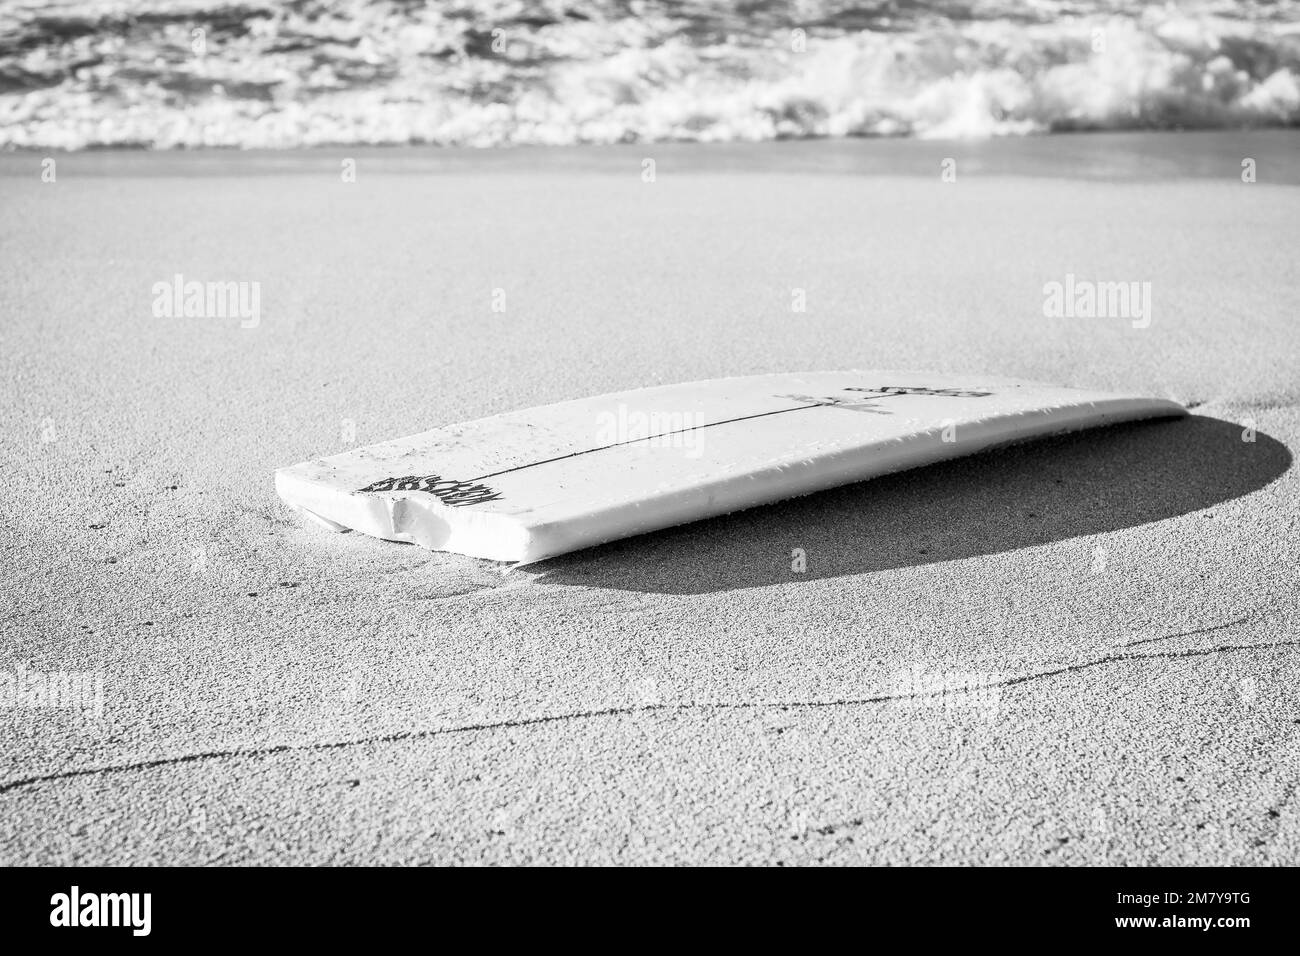 Una tavola da surf rotta in spiaggia Foto Stock